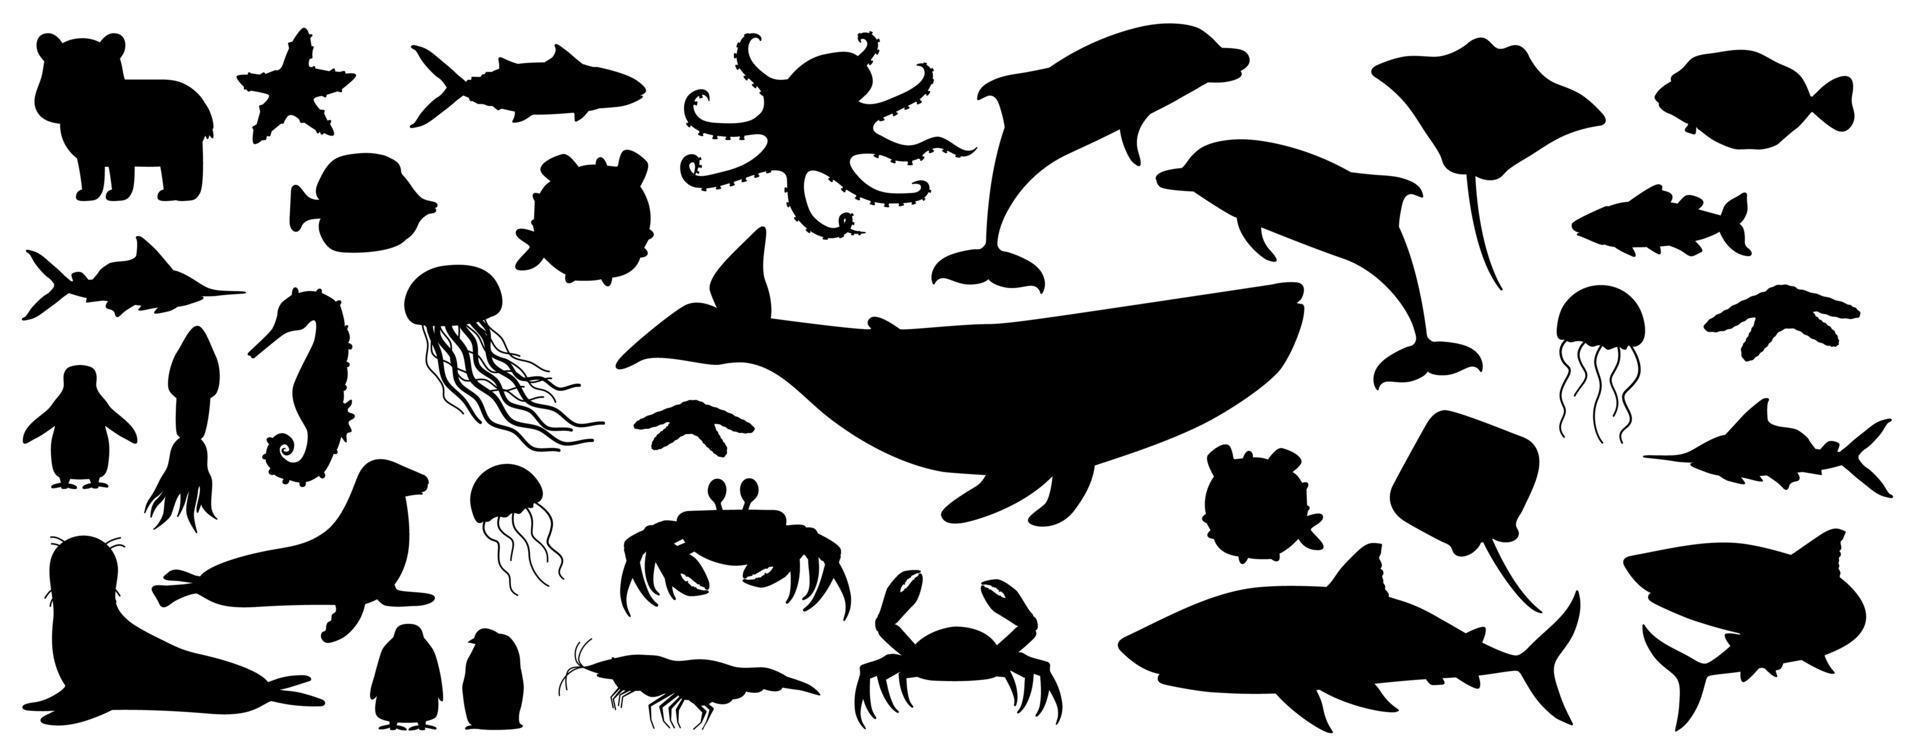 grande conjunto de animais do norte do mar do mar da silhueta branca preta isolada. doodle vetor baleia, golfinho, tubarão, arraia, água-viva, peixe, estrelas, caranguejo, filhote de pinguim-rei, polvo, foca, filhote de urso polar